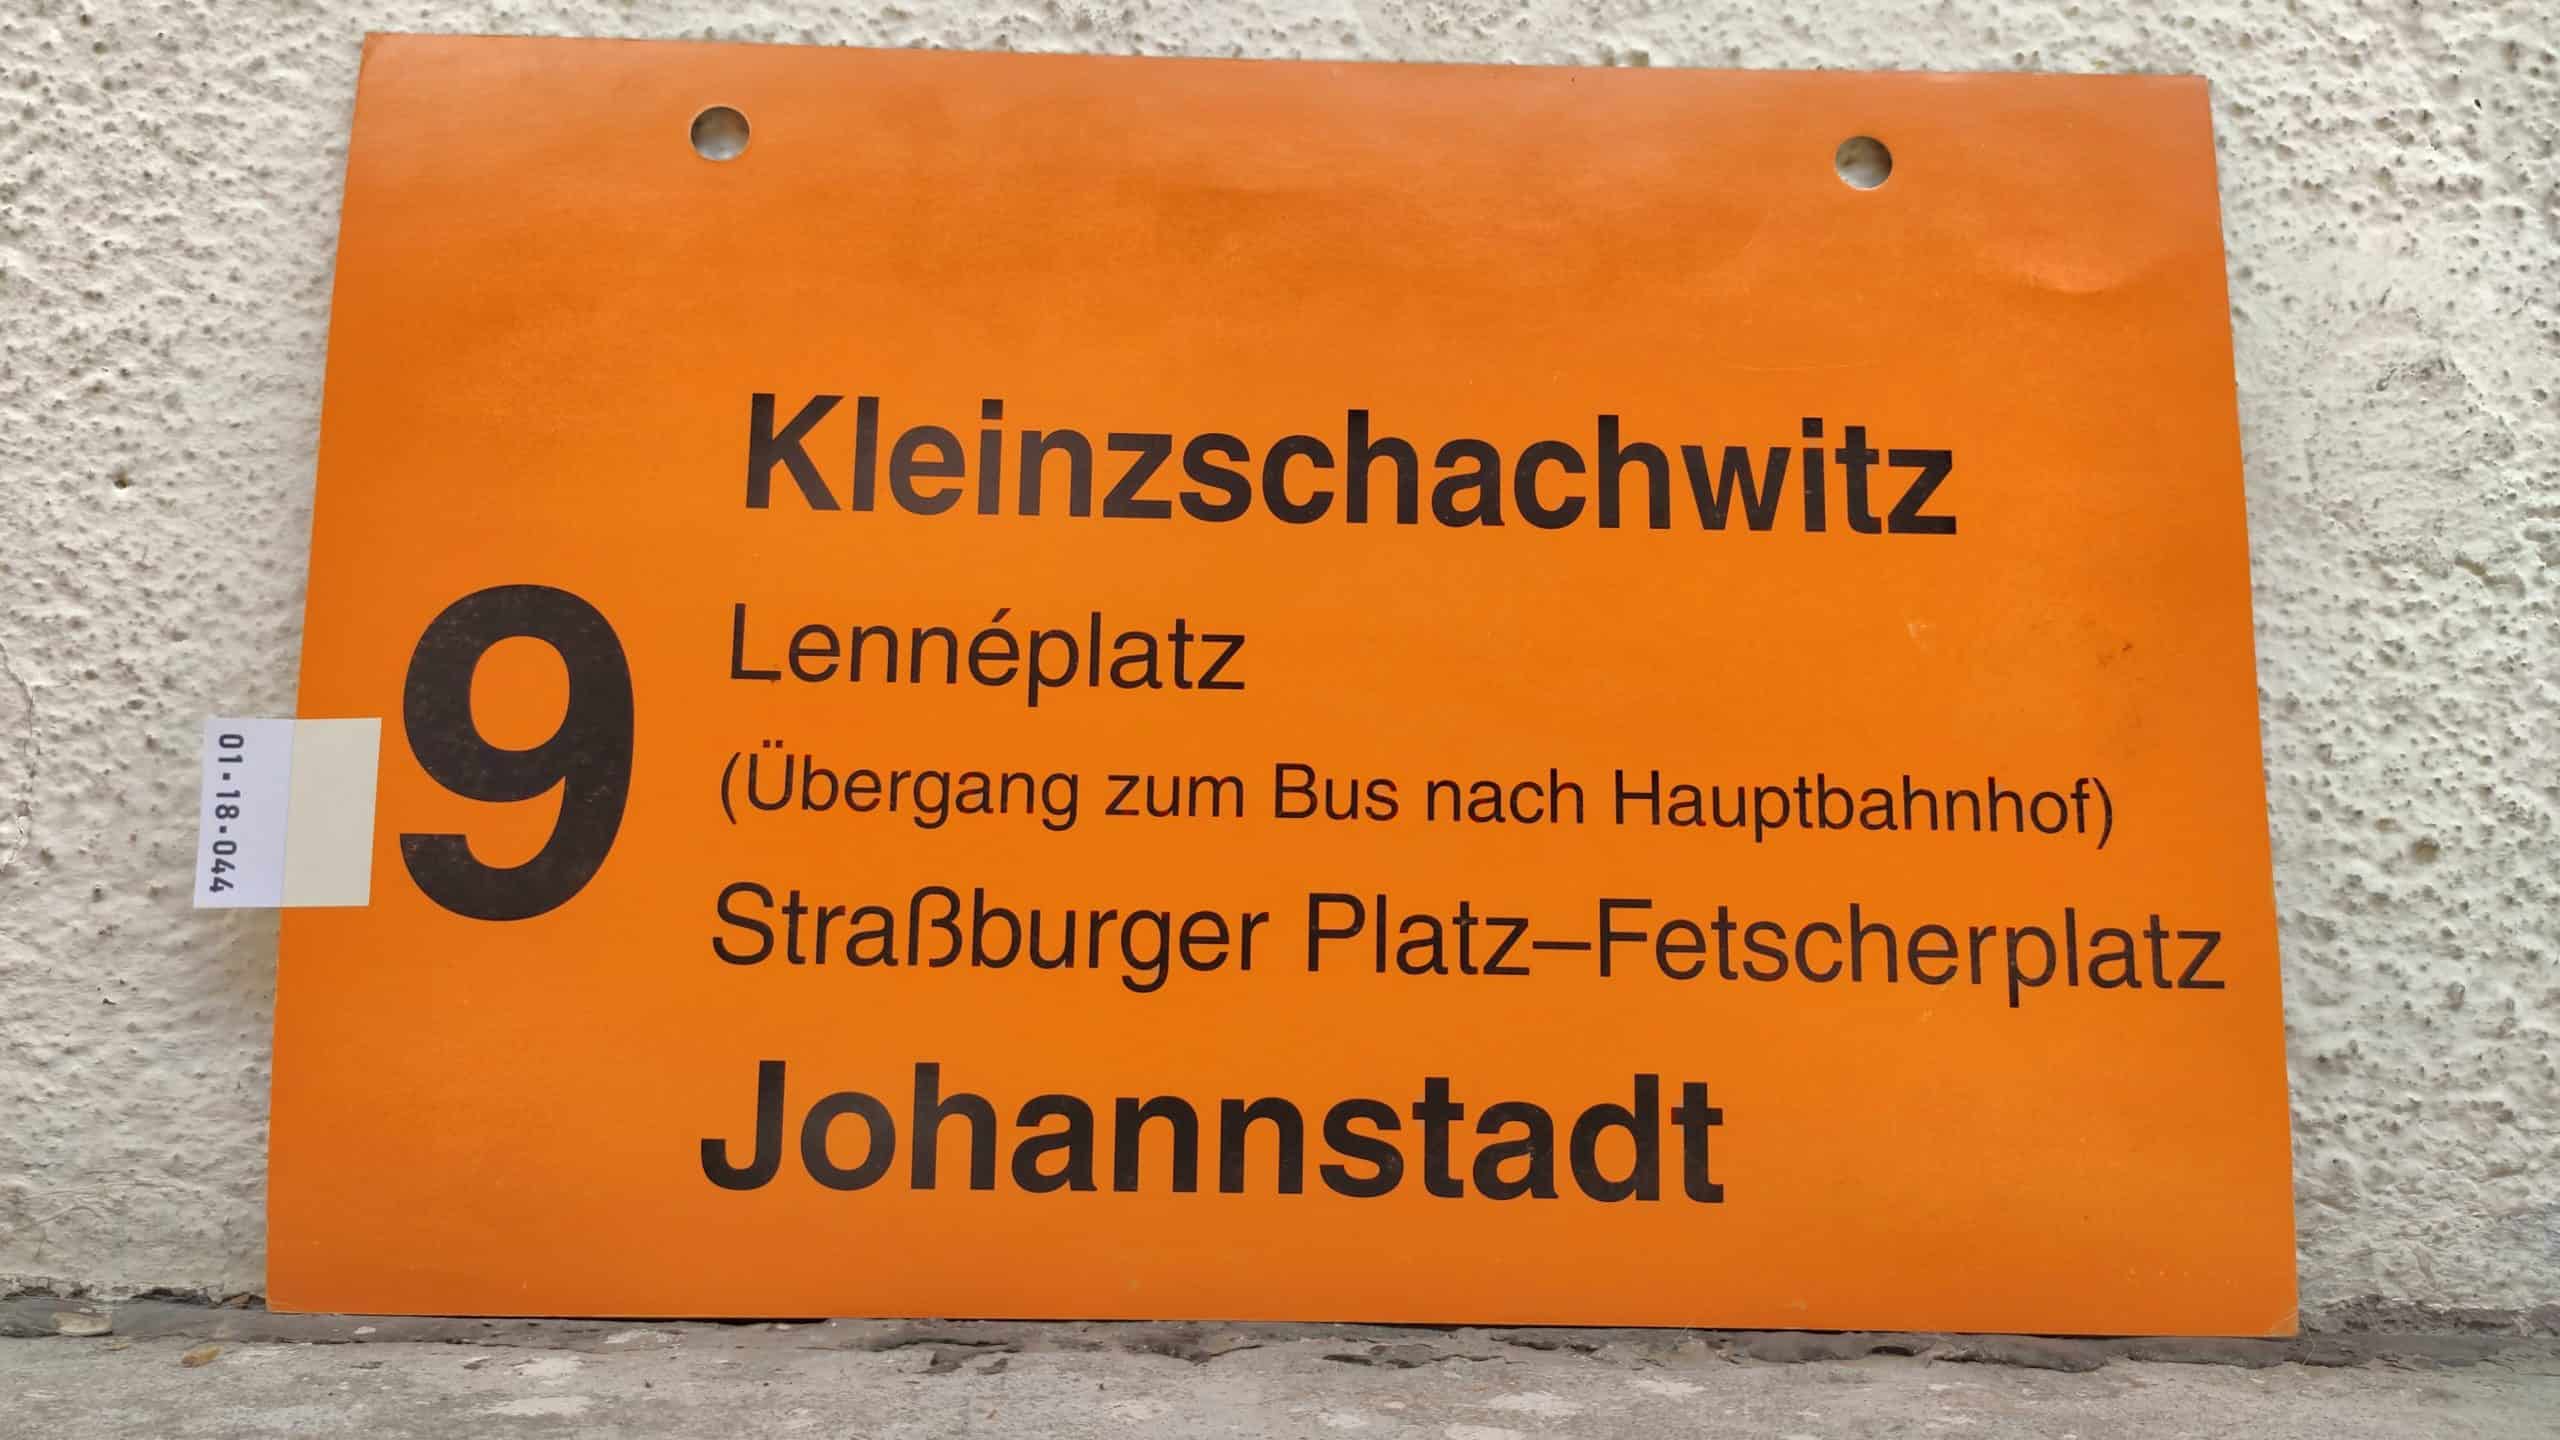 9 Kleinzschachwitz – Johannstadt